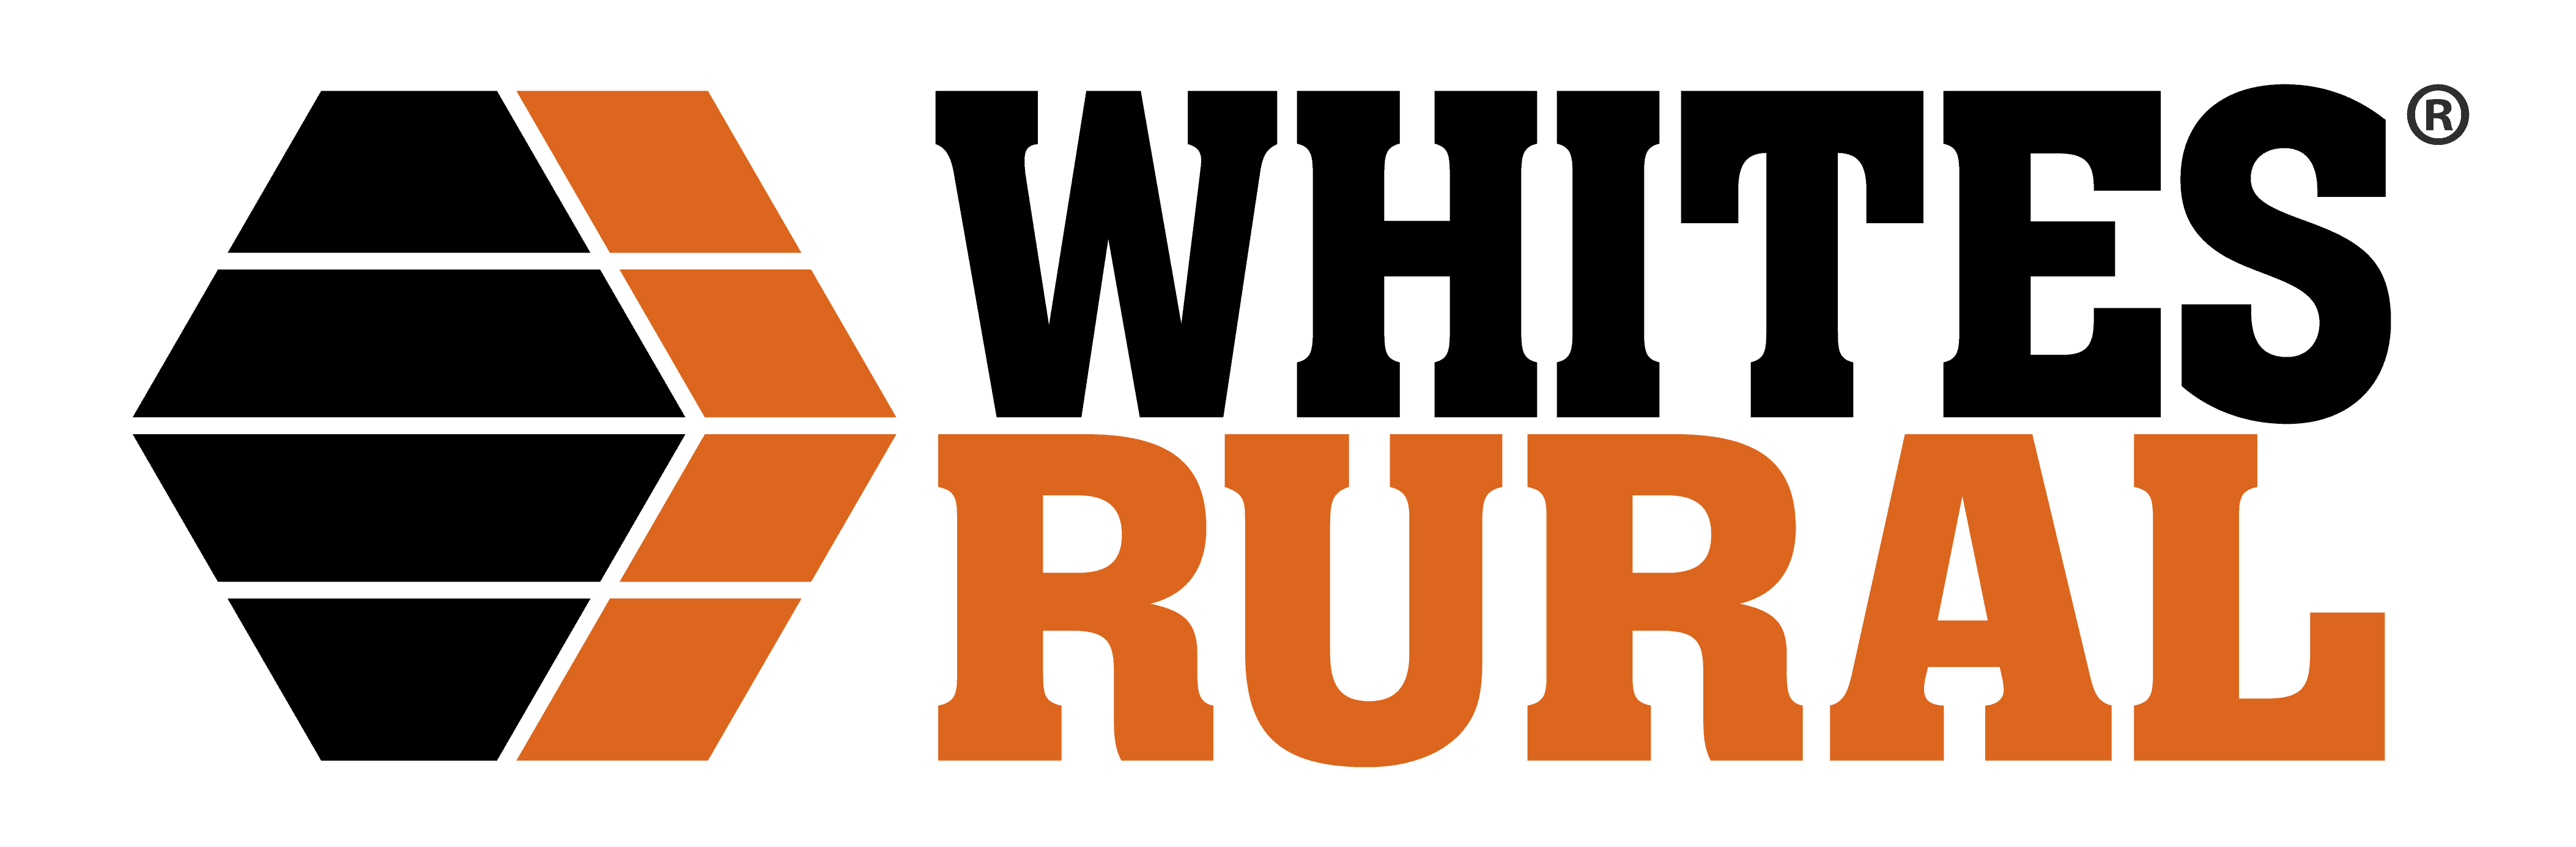 White's Rural Logo